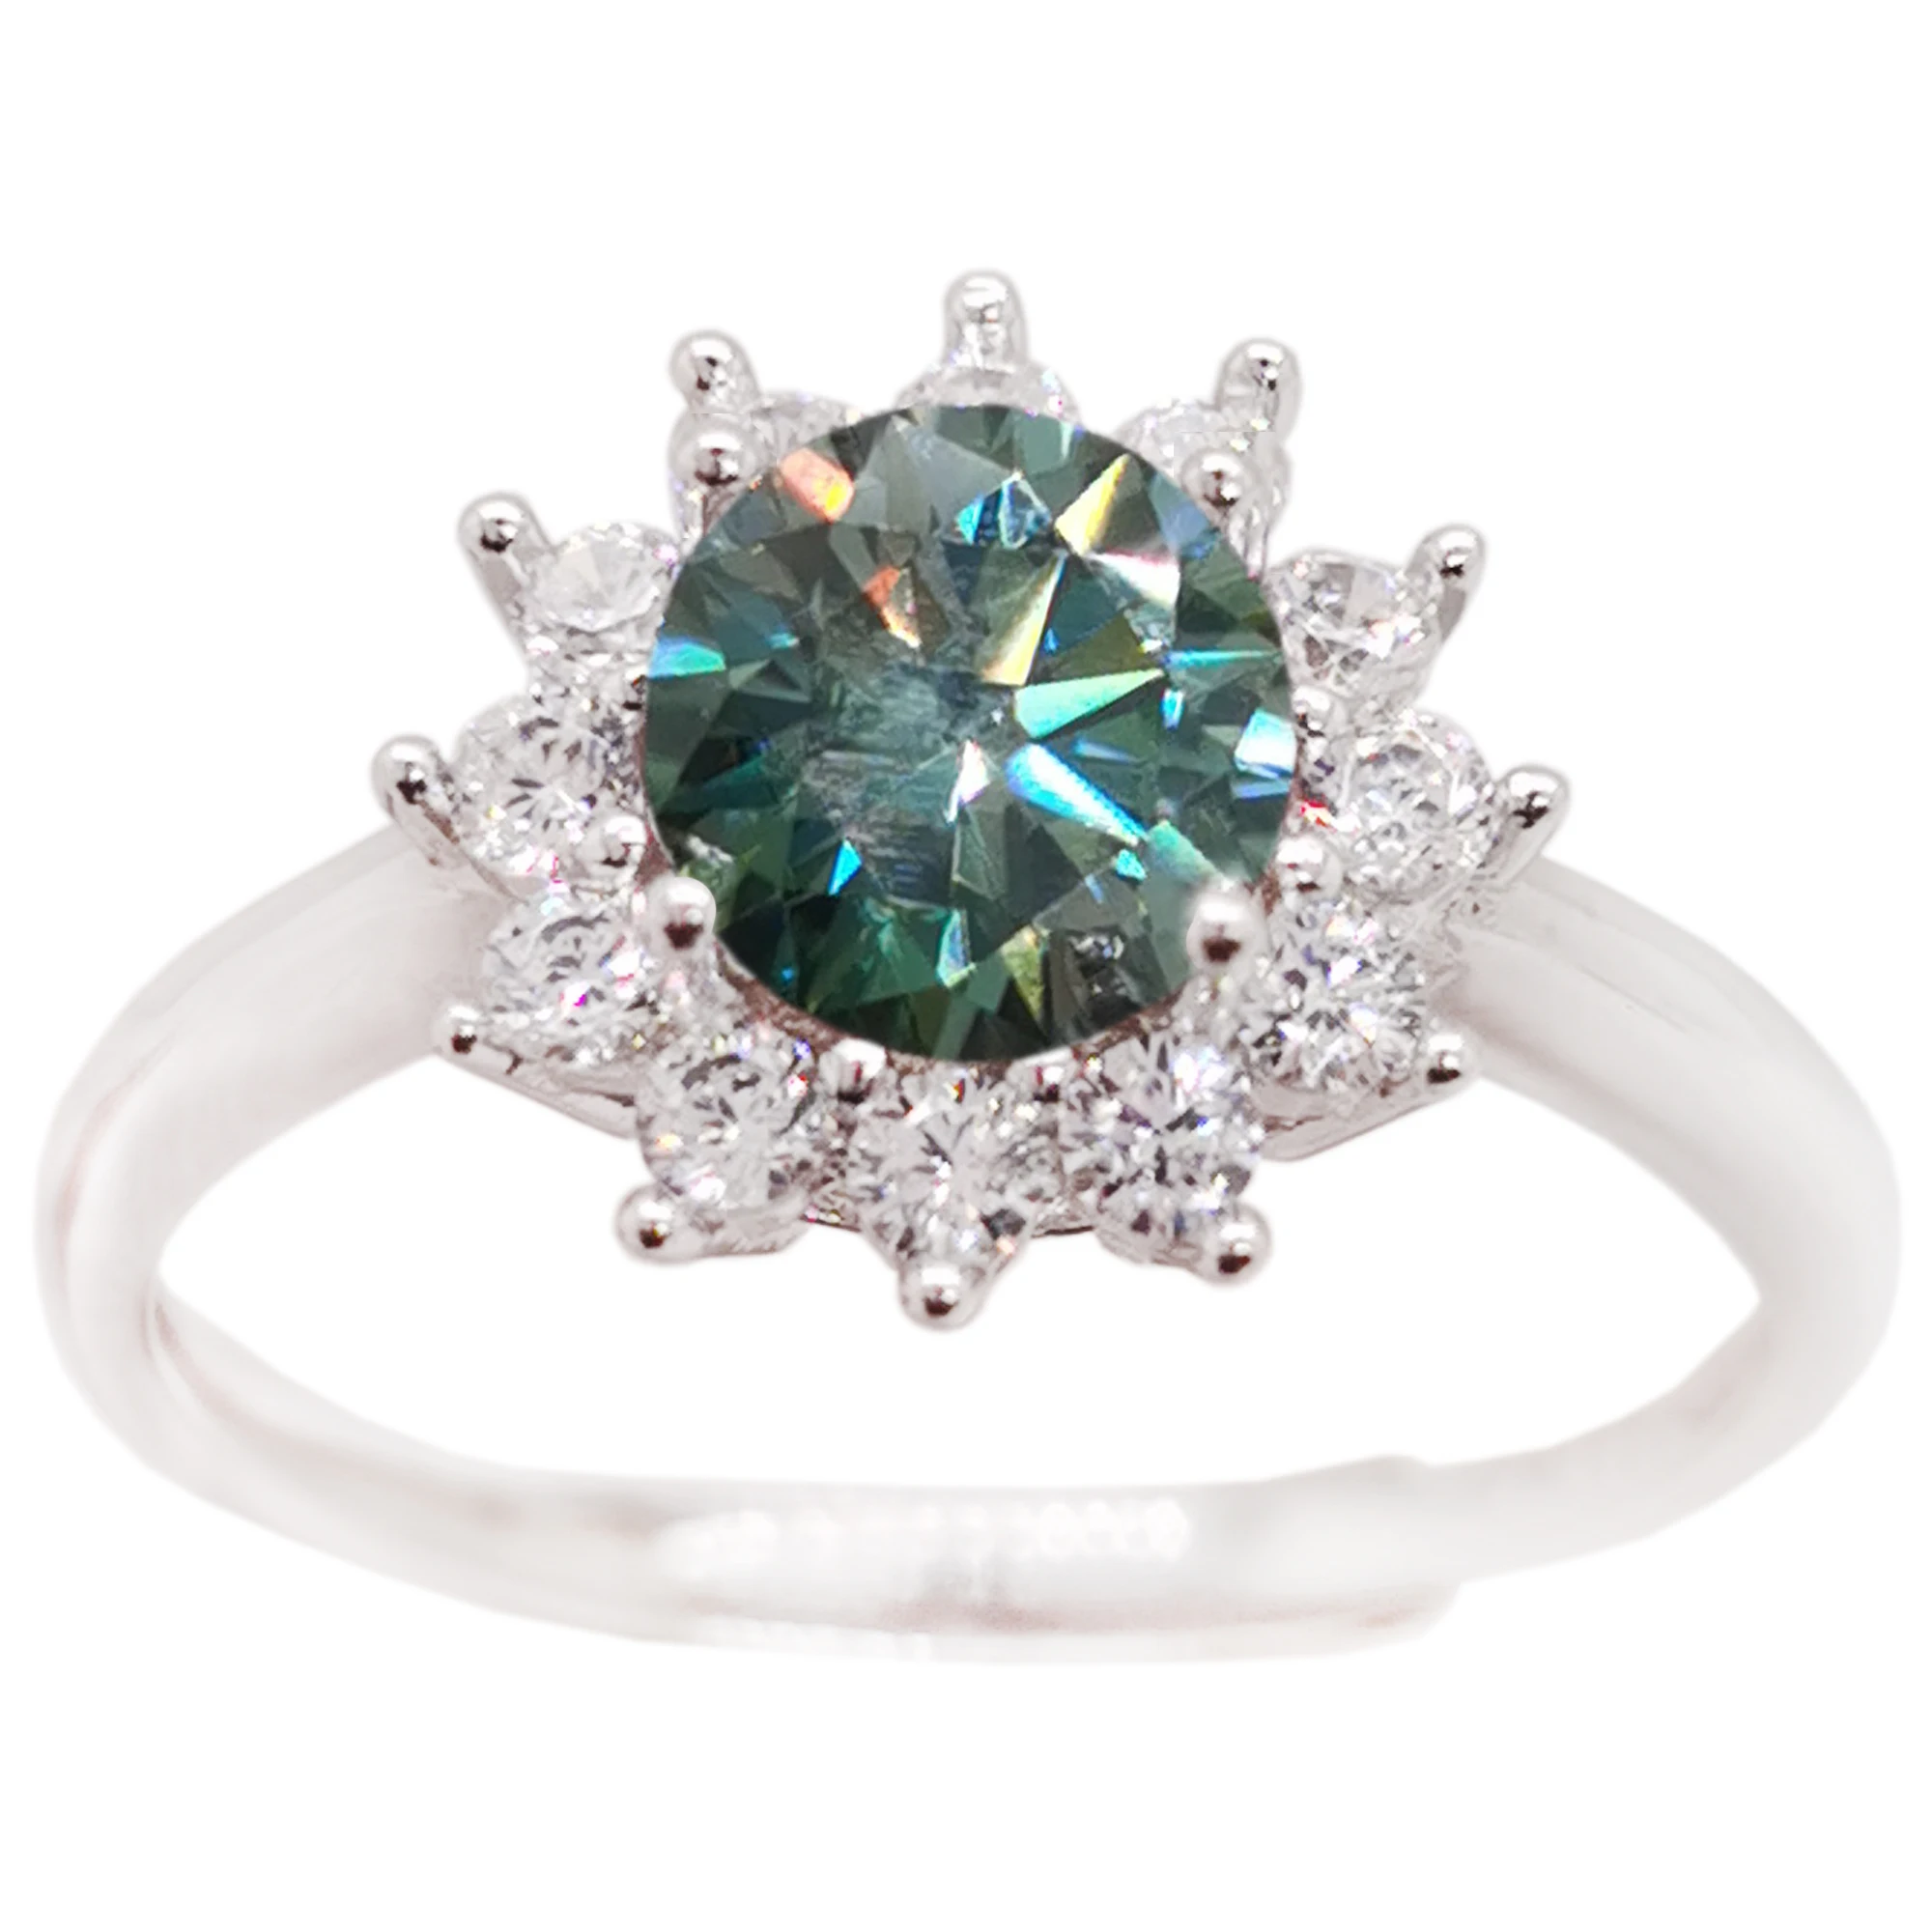 

Обручальное кольцо с зеленым муассанитом, 1 карат, 6,5 мм, класса VVS, серебряное кольцо с муассанитом, золотое покрытие 18 К, 925 стандарта